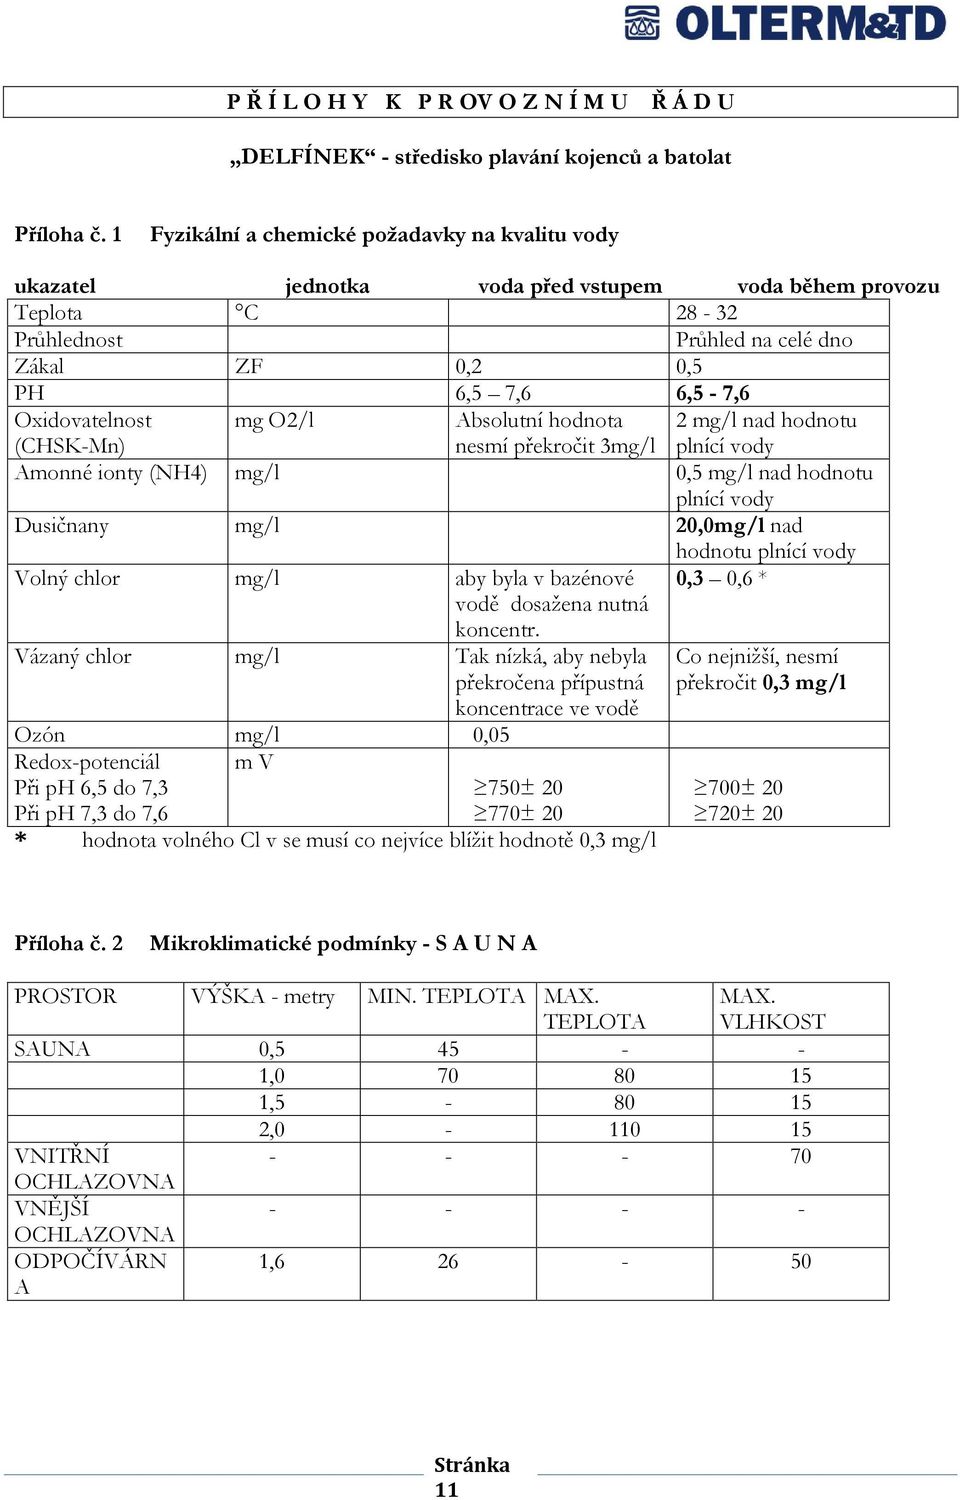 Oxidovatelnost (CHSK-Mn) mg O2/l Absolutní hodnota nesmí překročit 3mg/l 2 mg/l nad hodnotu plnící vody Amonné ionty (NH4) mg/l 0,5 mg/l nad hodnotu plnící vody Dusičnany mg/l 20,0mg/l nad hodnotu